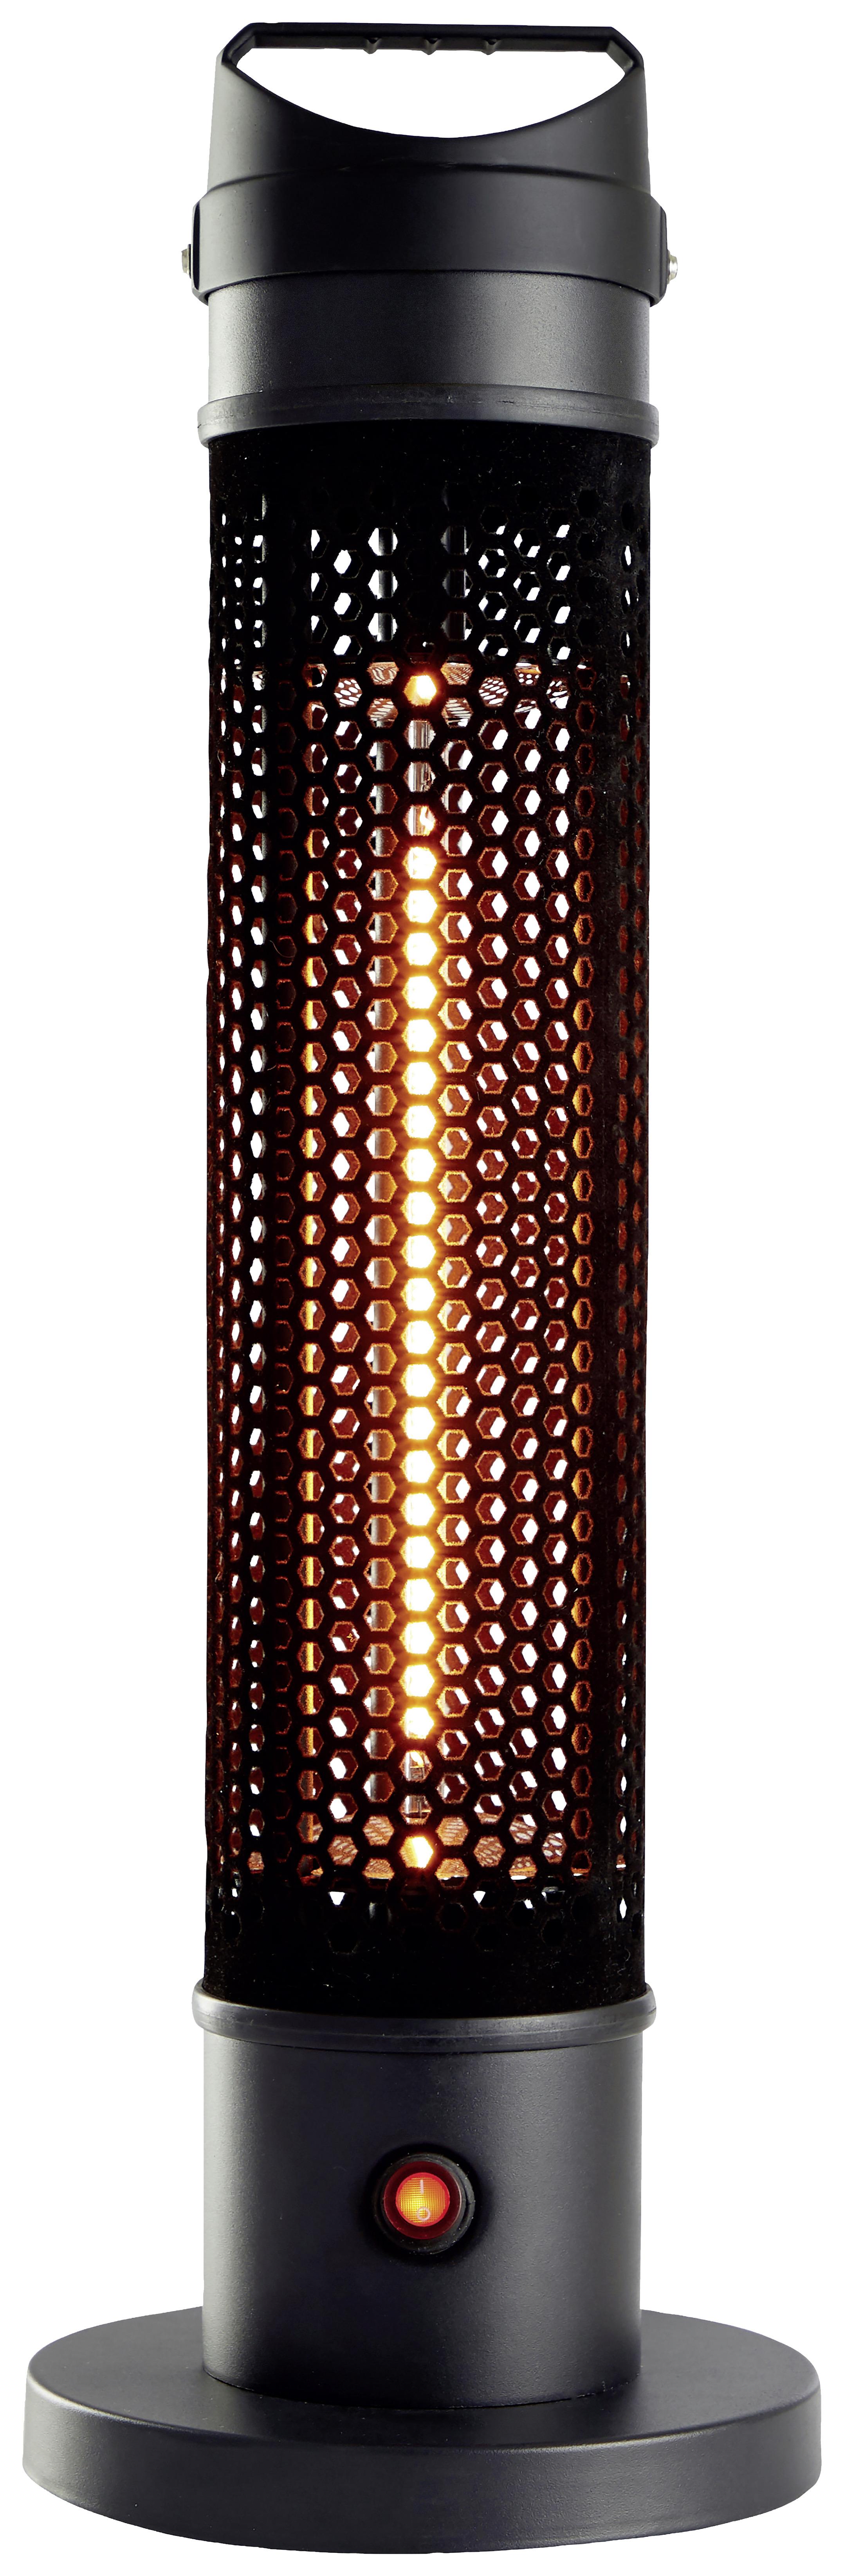 Terasový Ohrievač Alpina Carbon 800w - Moderný, plast (20/61cm) - Alpina 5849